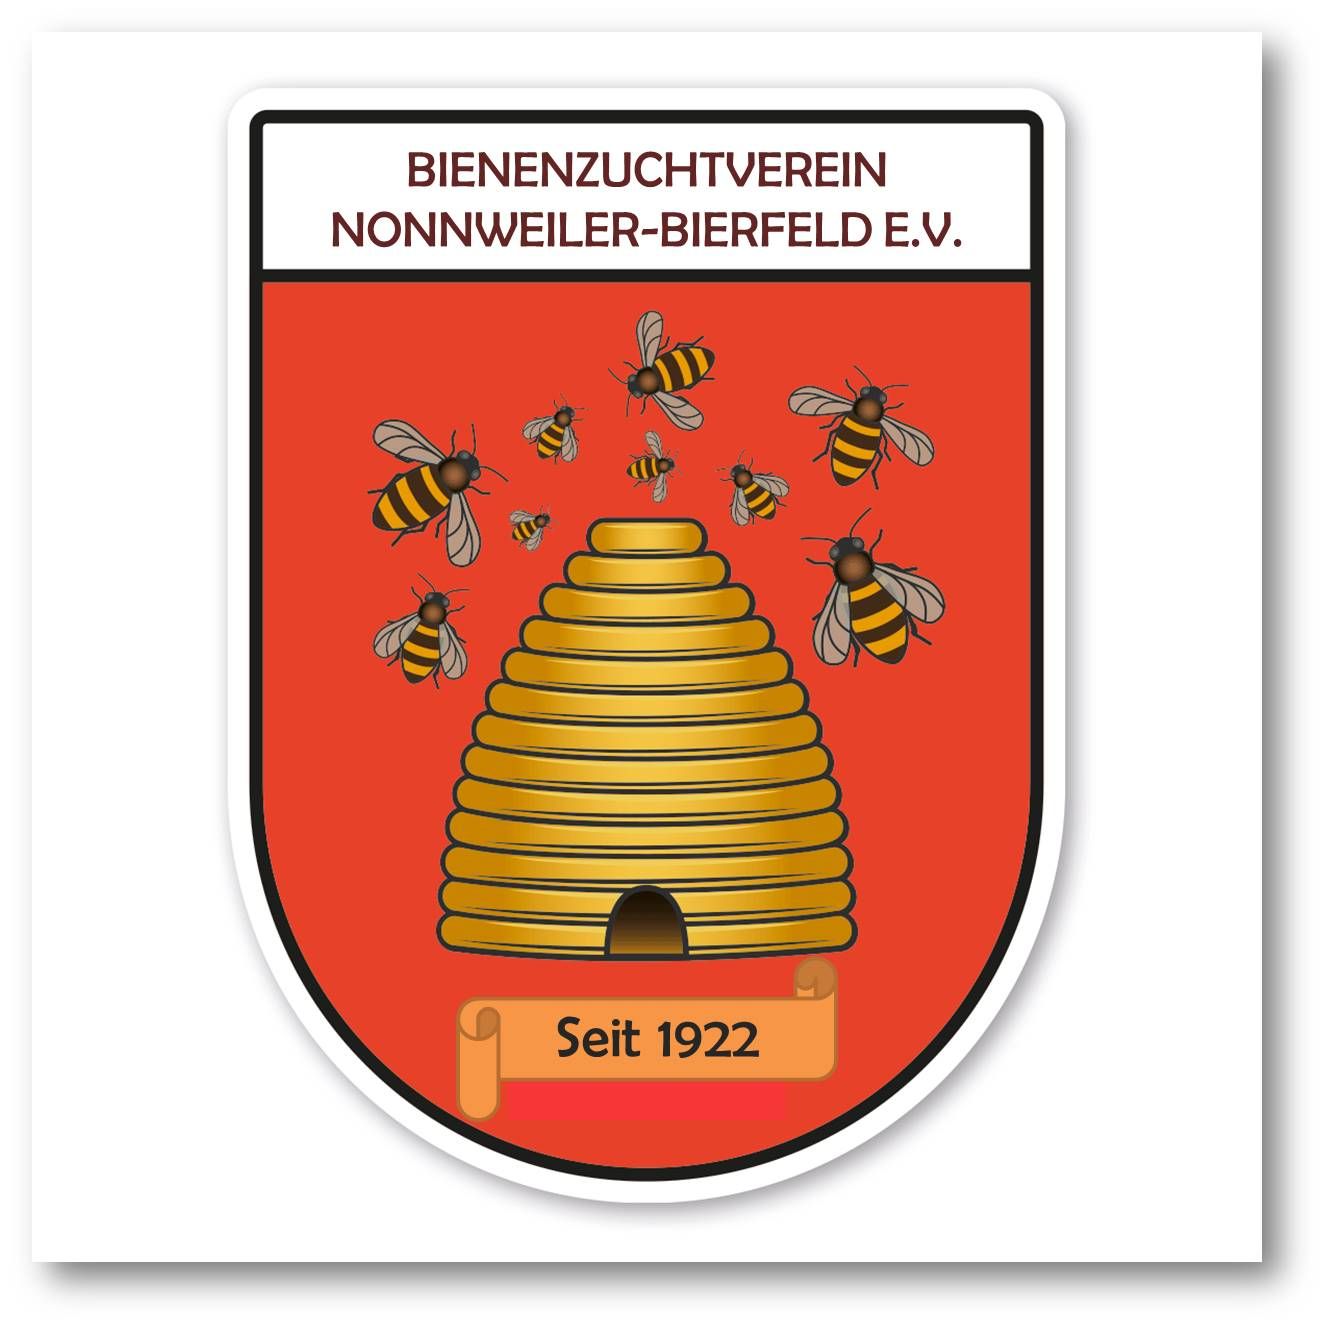 Profilbild des Vereins BIENENZUCHTVEREIN NONNWEILER - BIERFELD E.V.